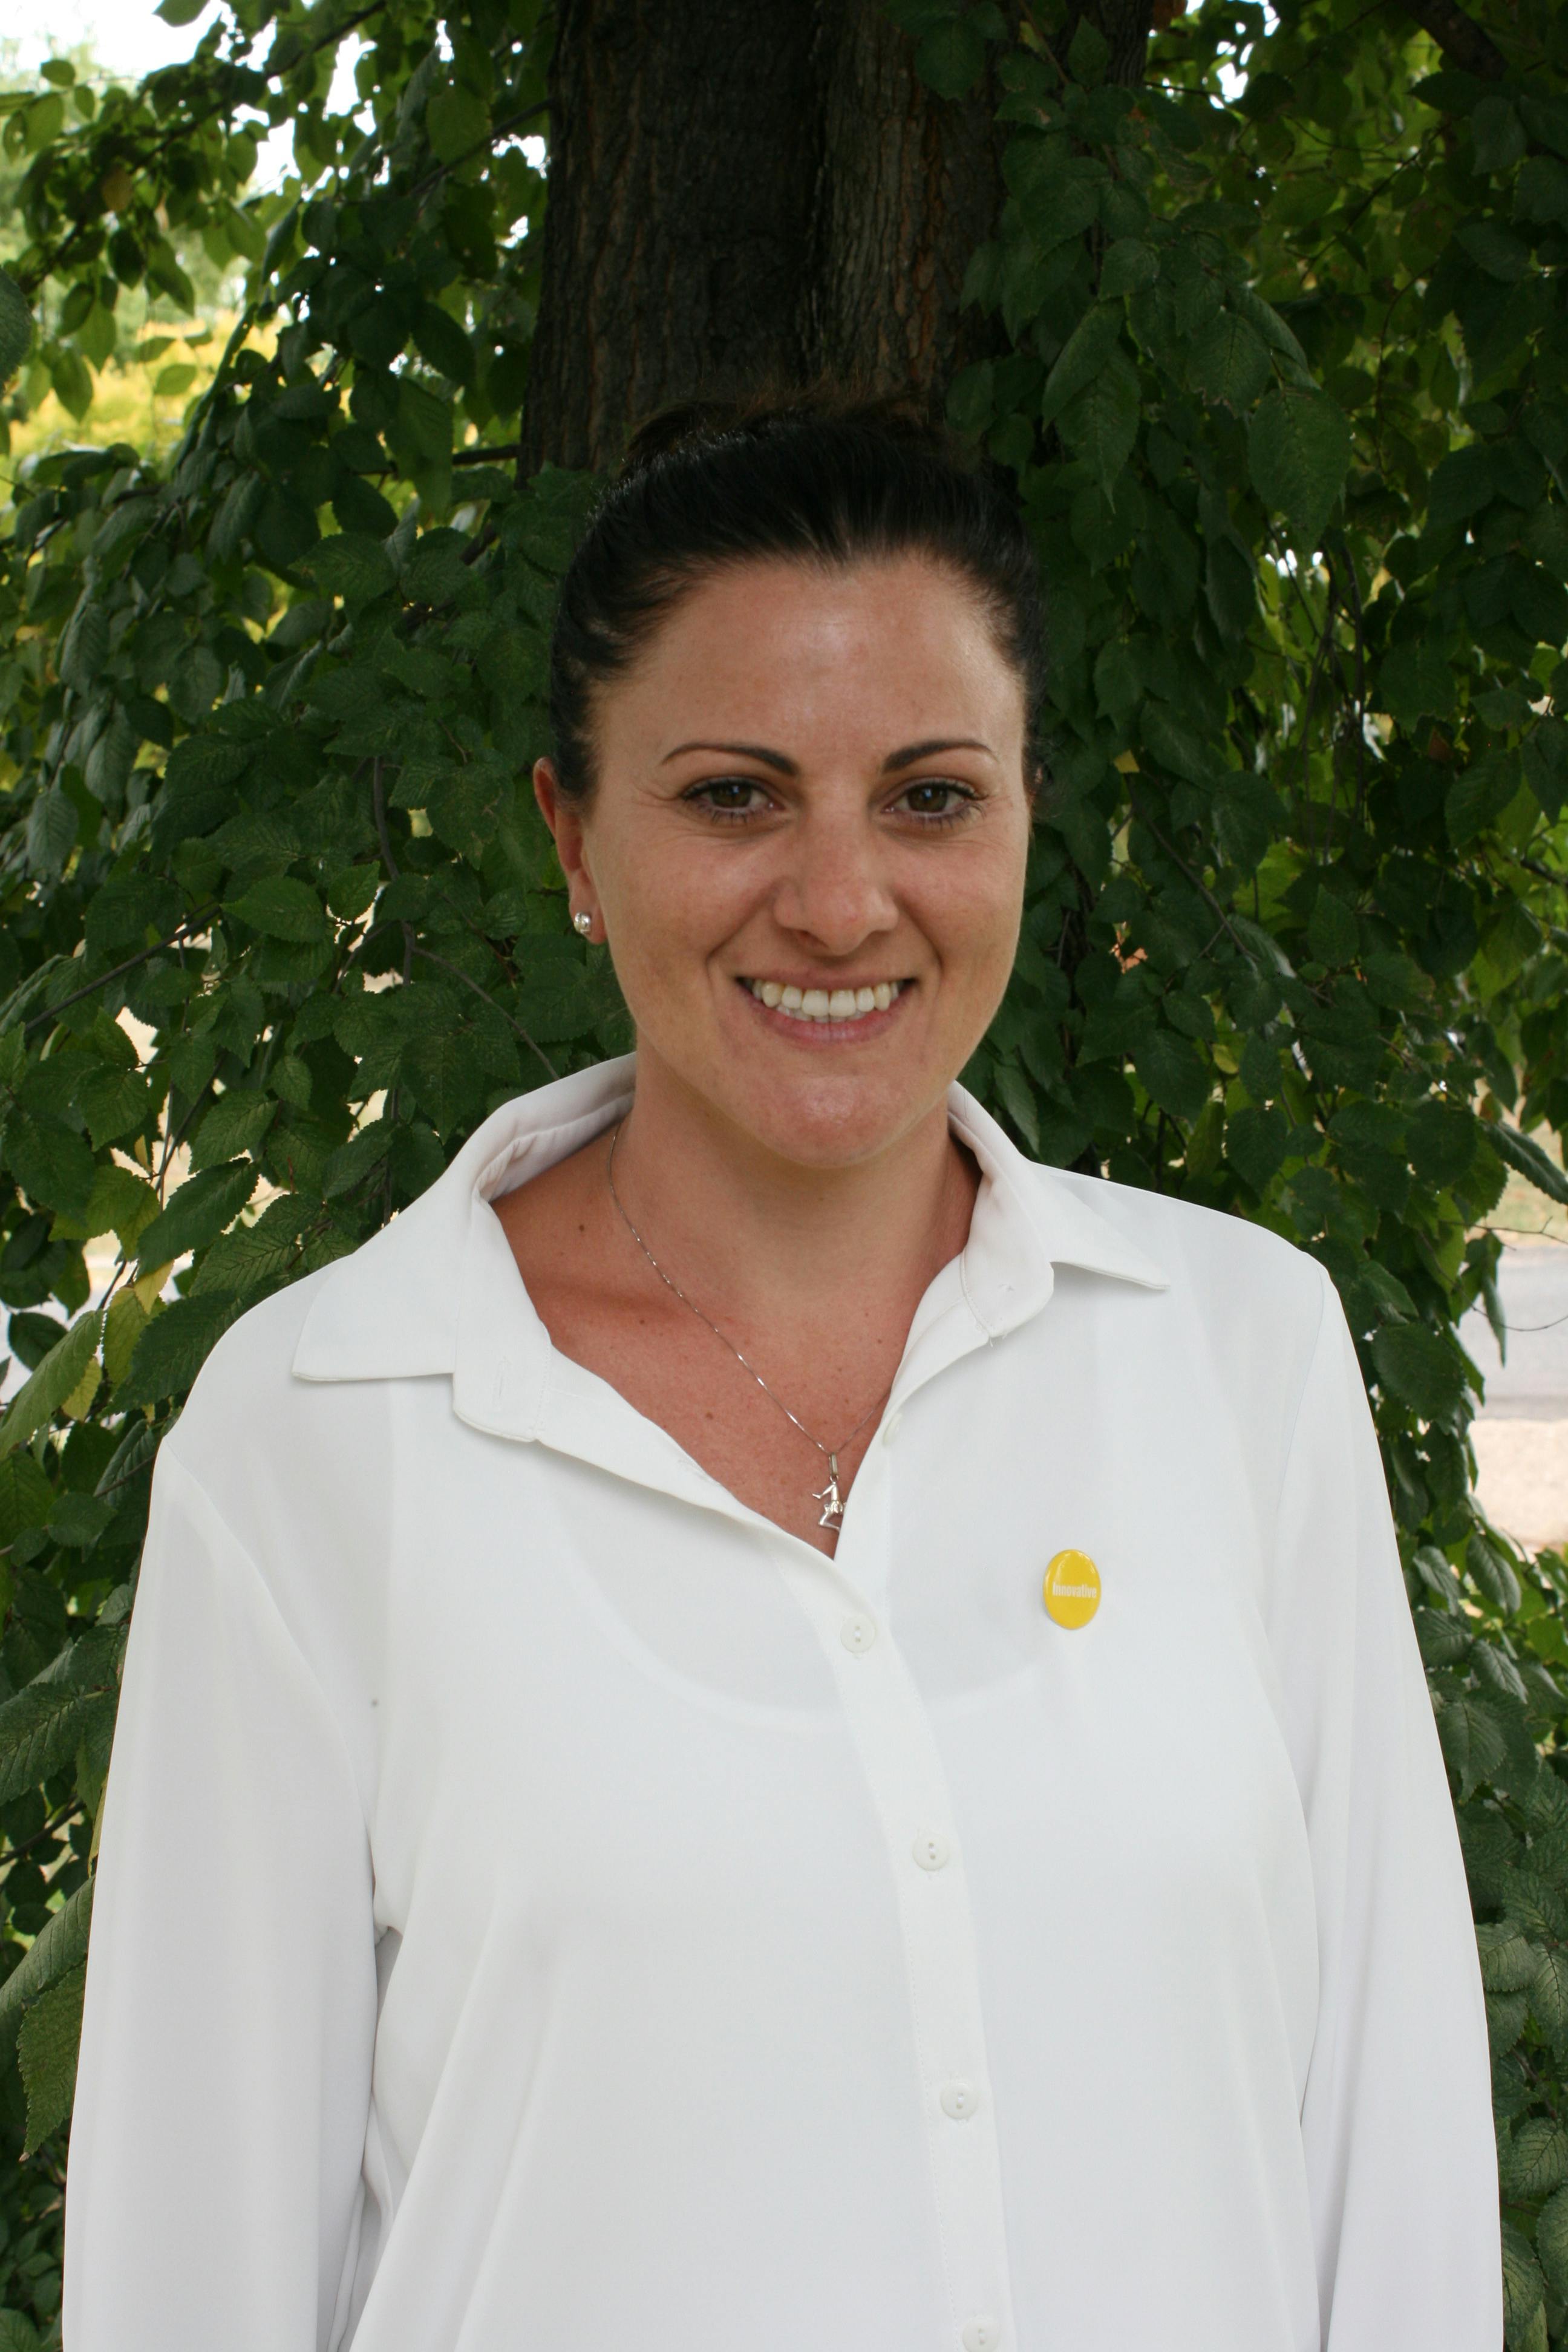 Team member, Lisa Mckenzie